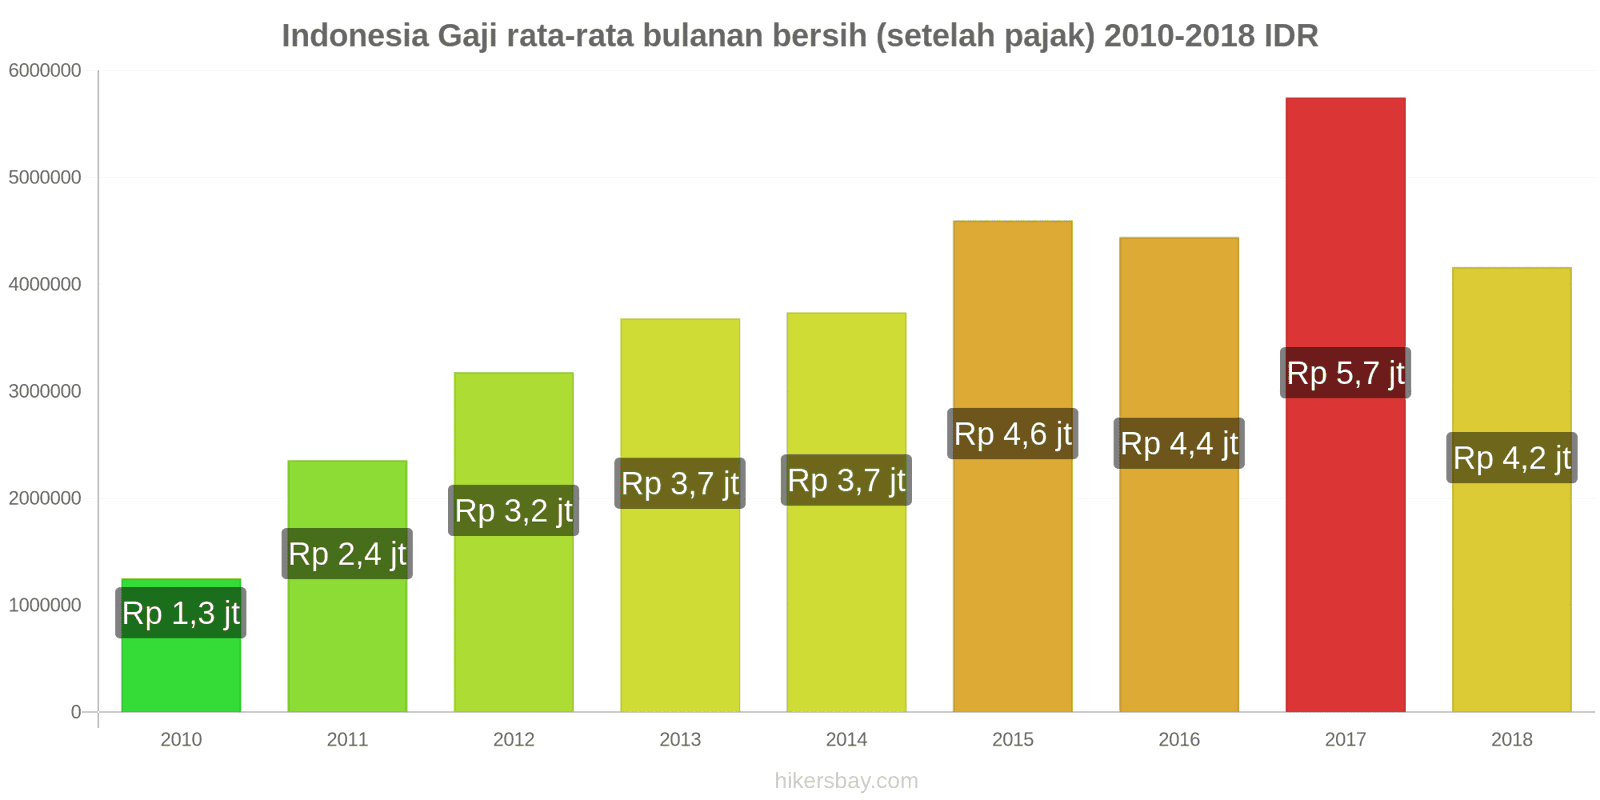 Indonesia perubahan harga Gaji bersih rata-rata bulanan (setelah pajak) hikersbay.com